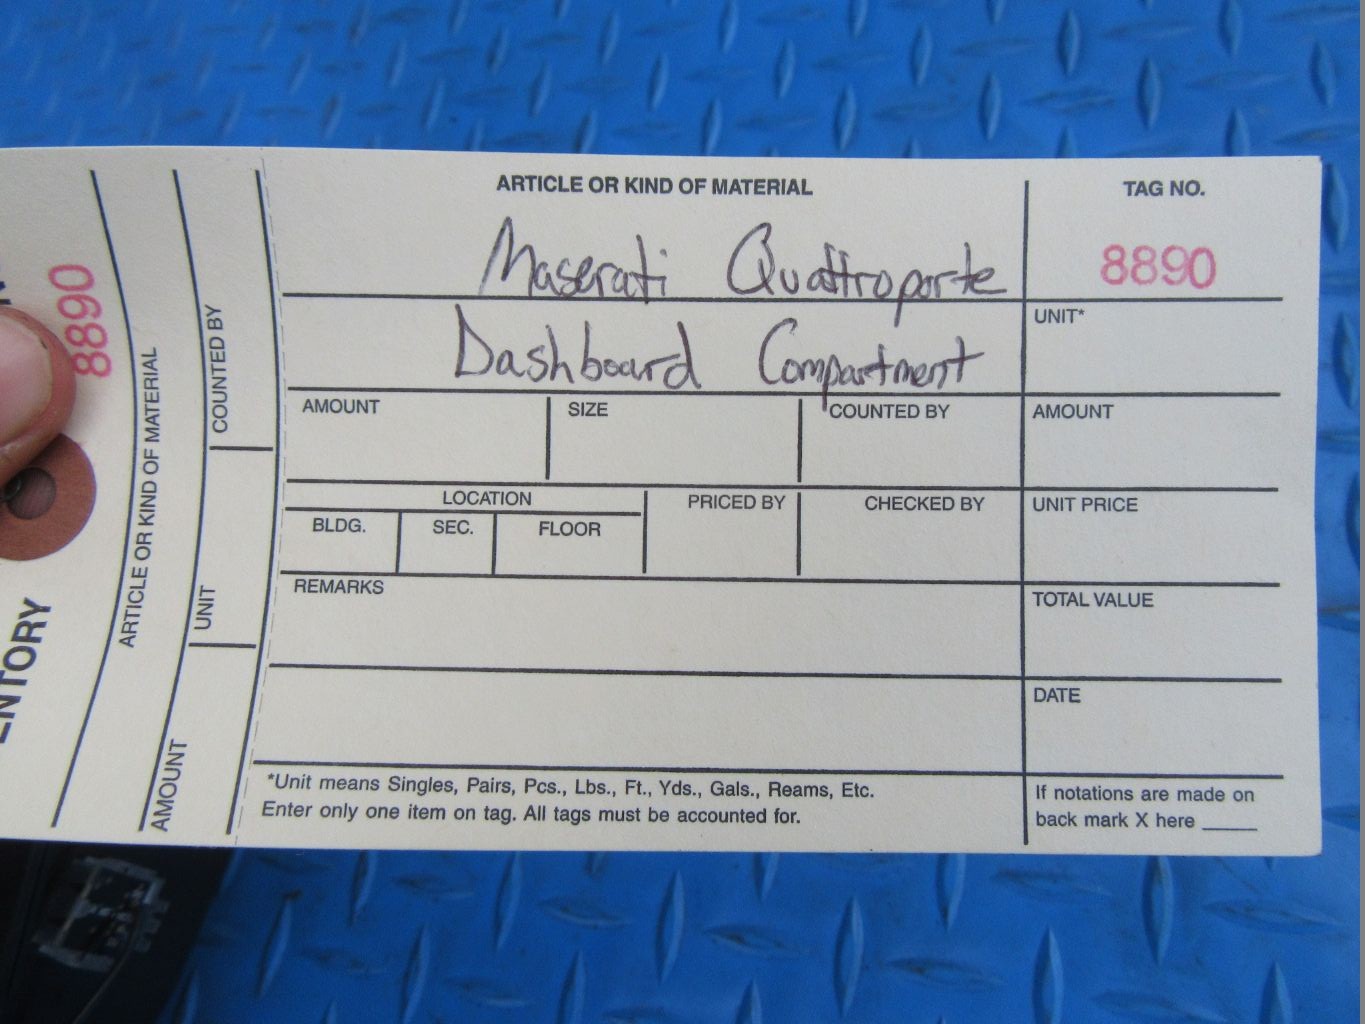 Maserati Quattroporte dashboard compartment #8890